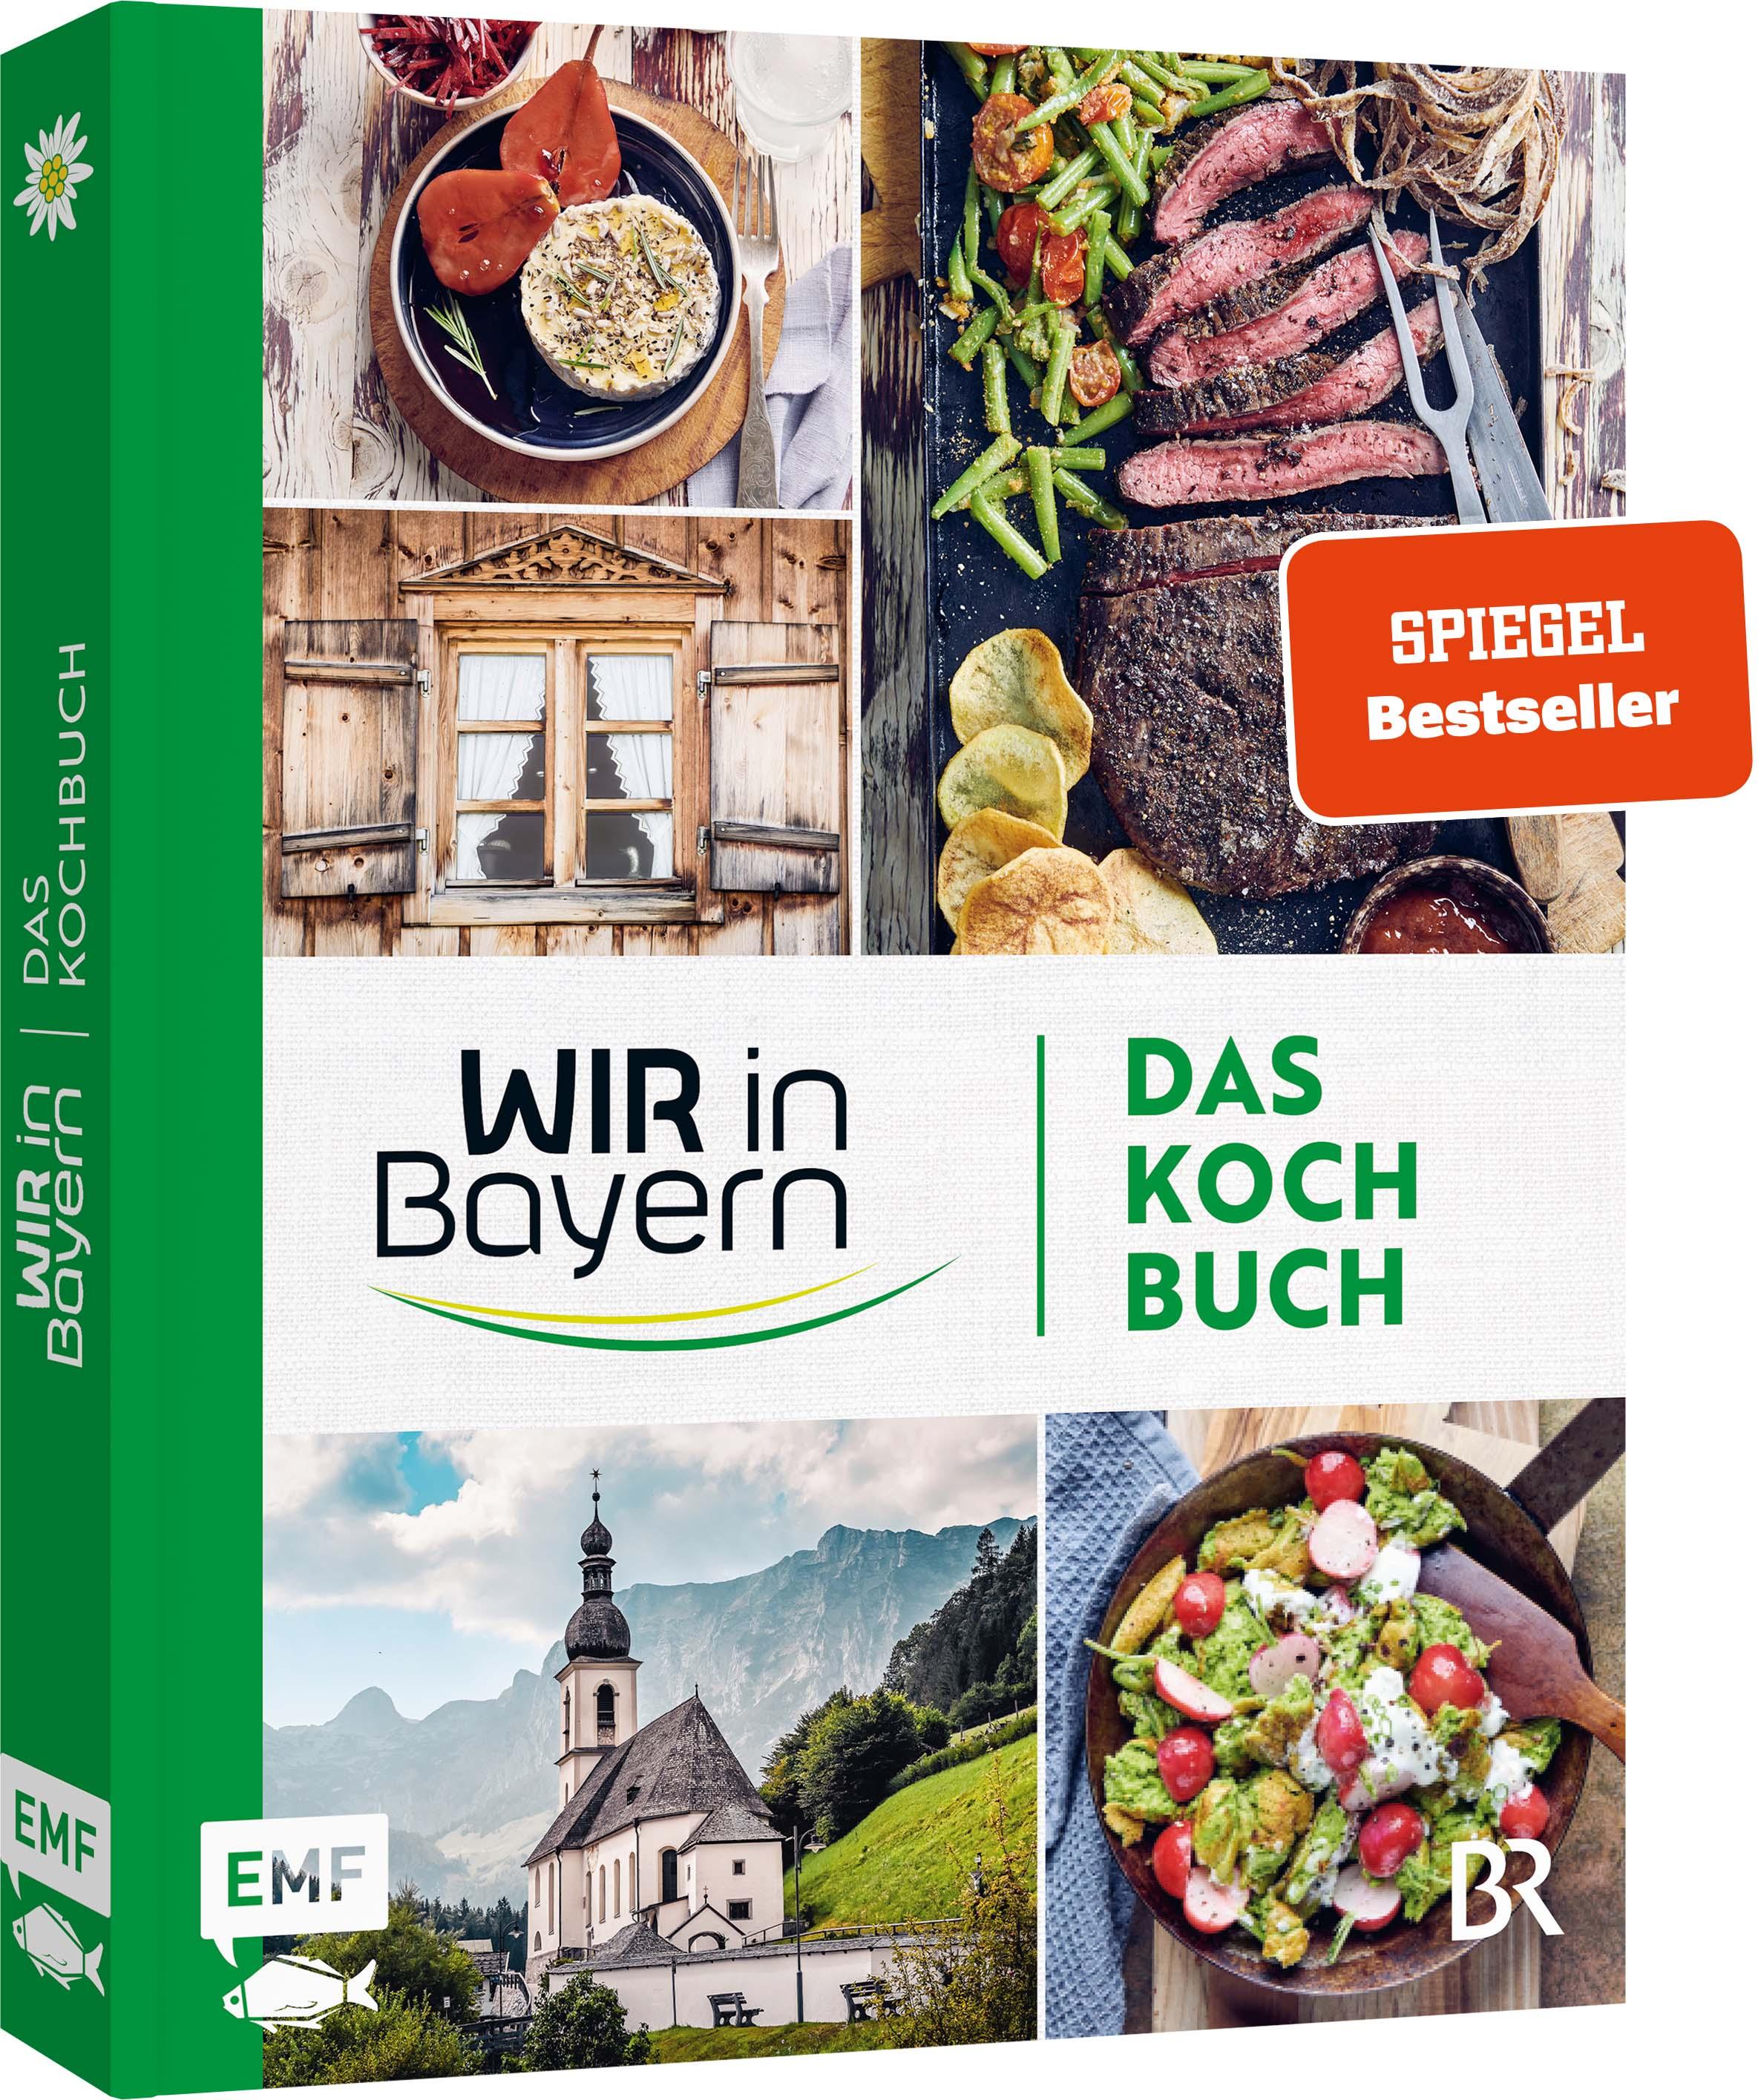 Wir in Bayern - Das Kochbuch 72 Lieblingsrezepte der TV-Köch*innen - mit Tipps und Einblicken hinter die Kulisse